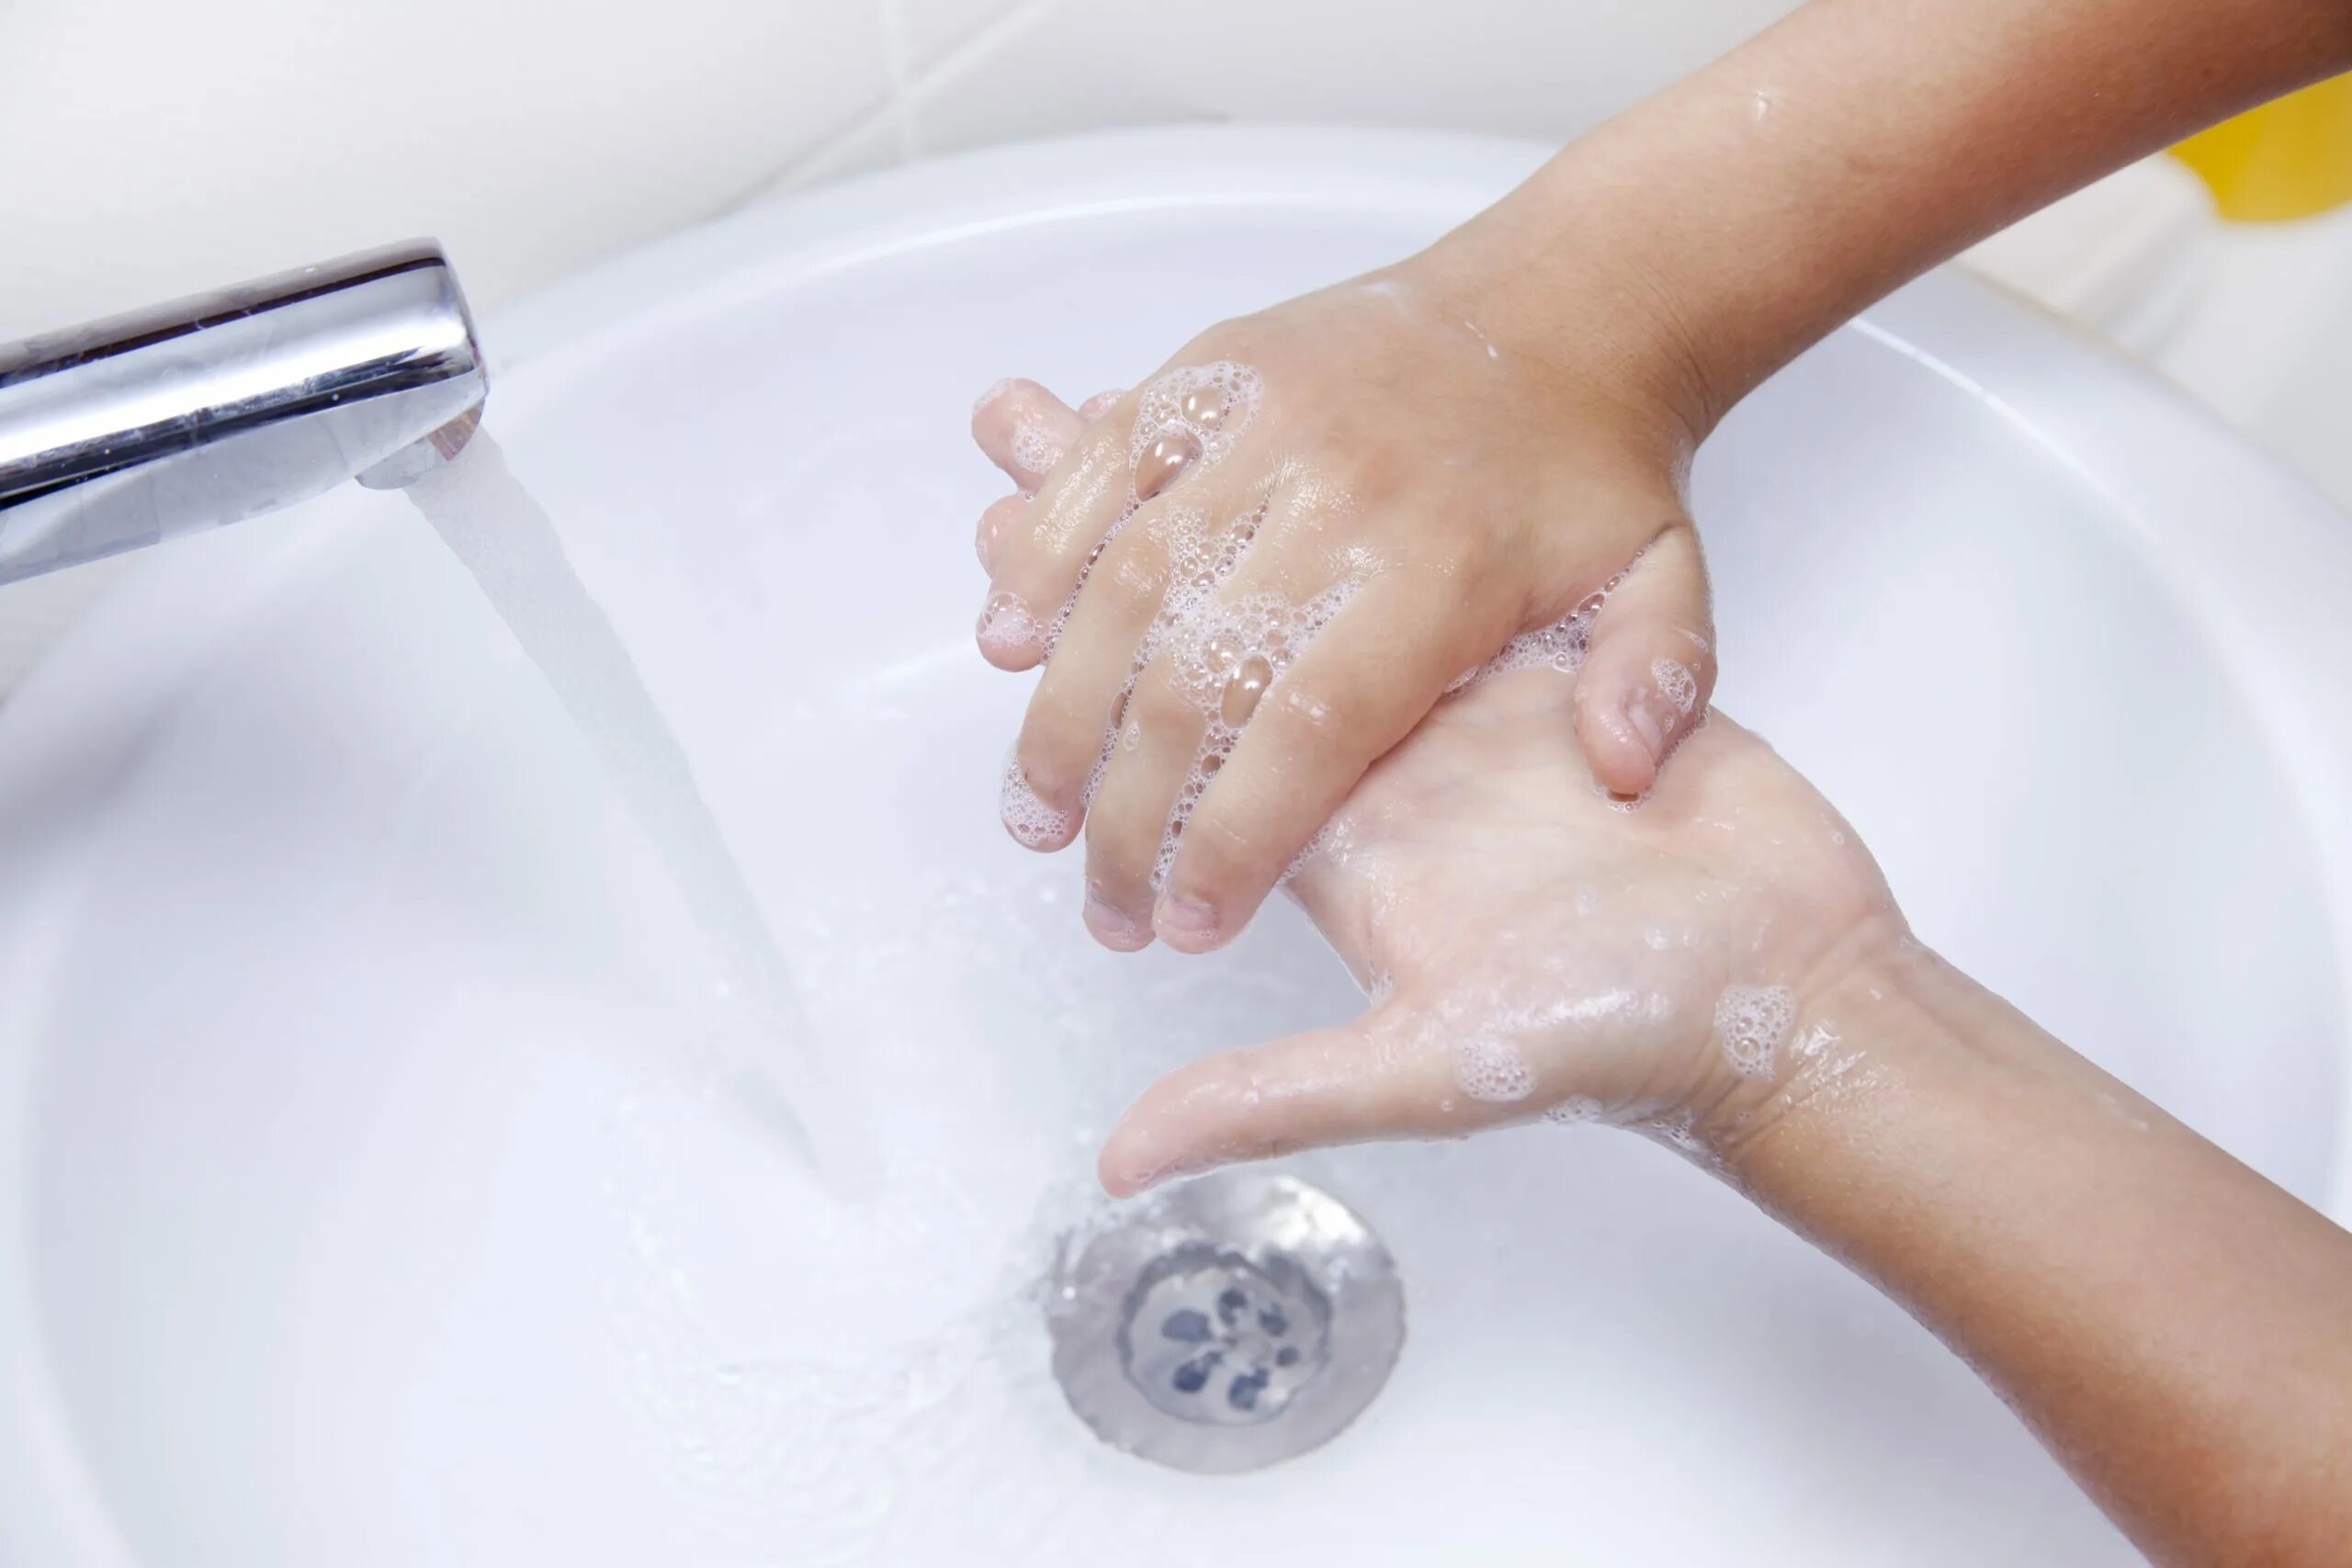 Мою руки 3 минуты. Мыло для рук. Гигиена рук с мылом. Ребенок моет руки с мылом. Детские руки в мыле.